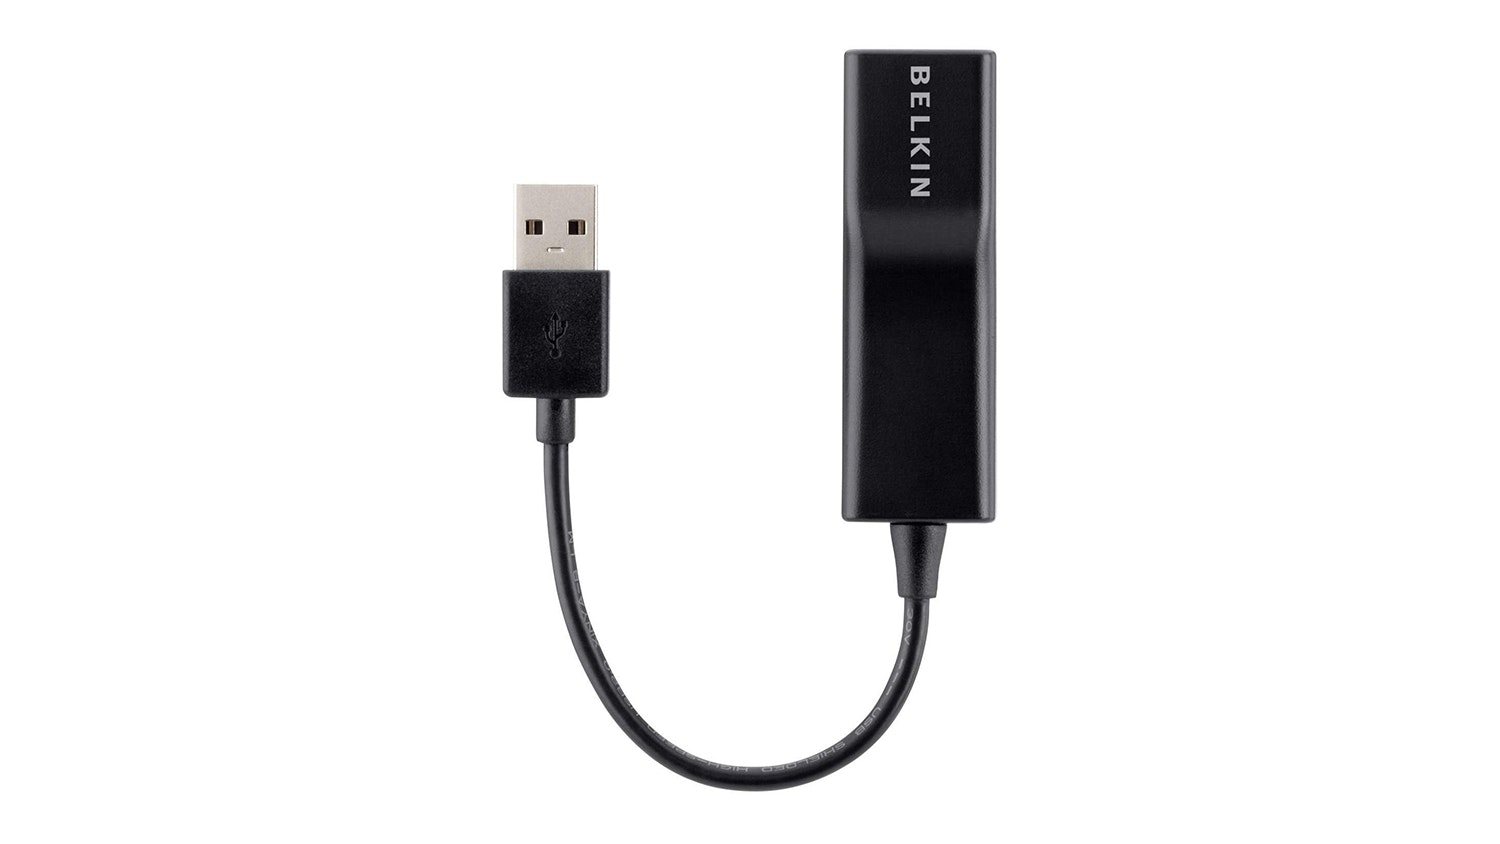 Belkin USB 2.0 Ethernet Adapter Harvey Norman New Zealand